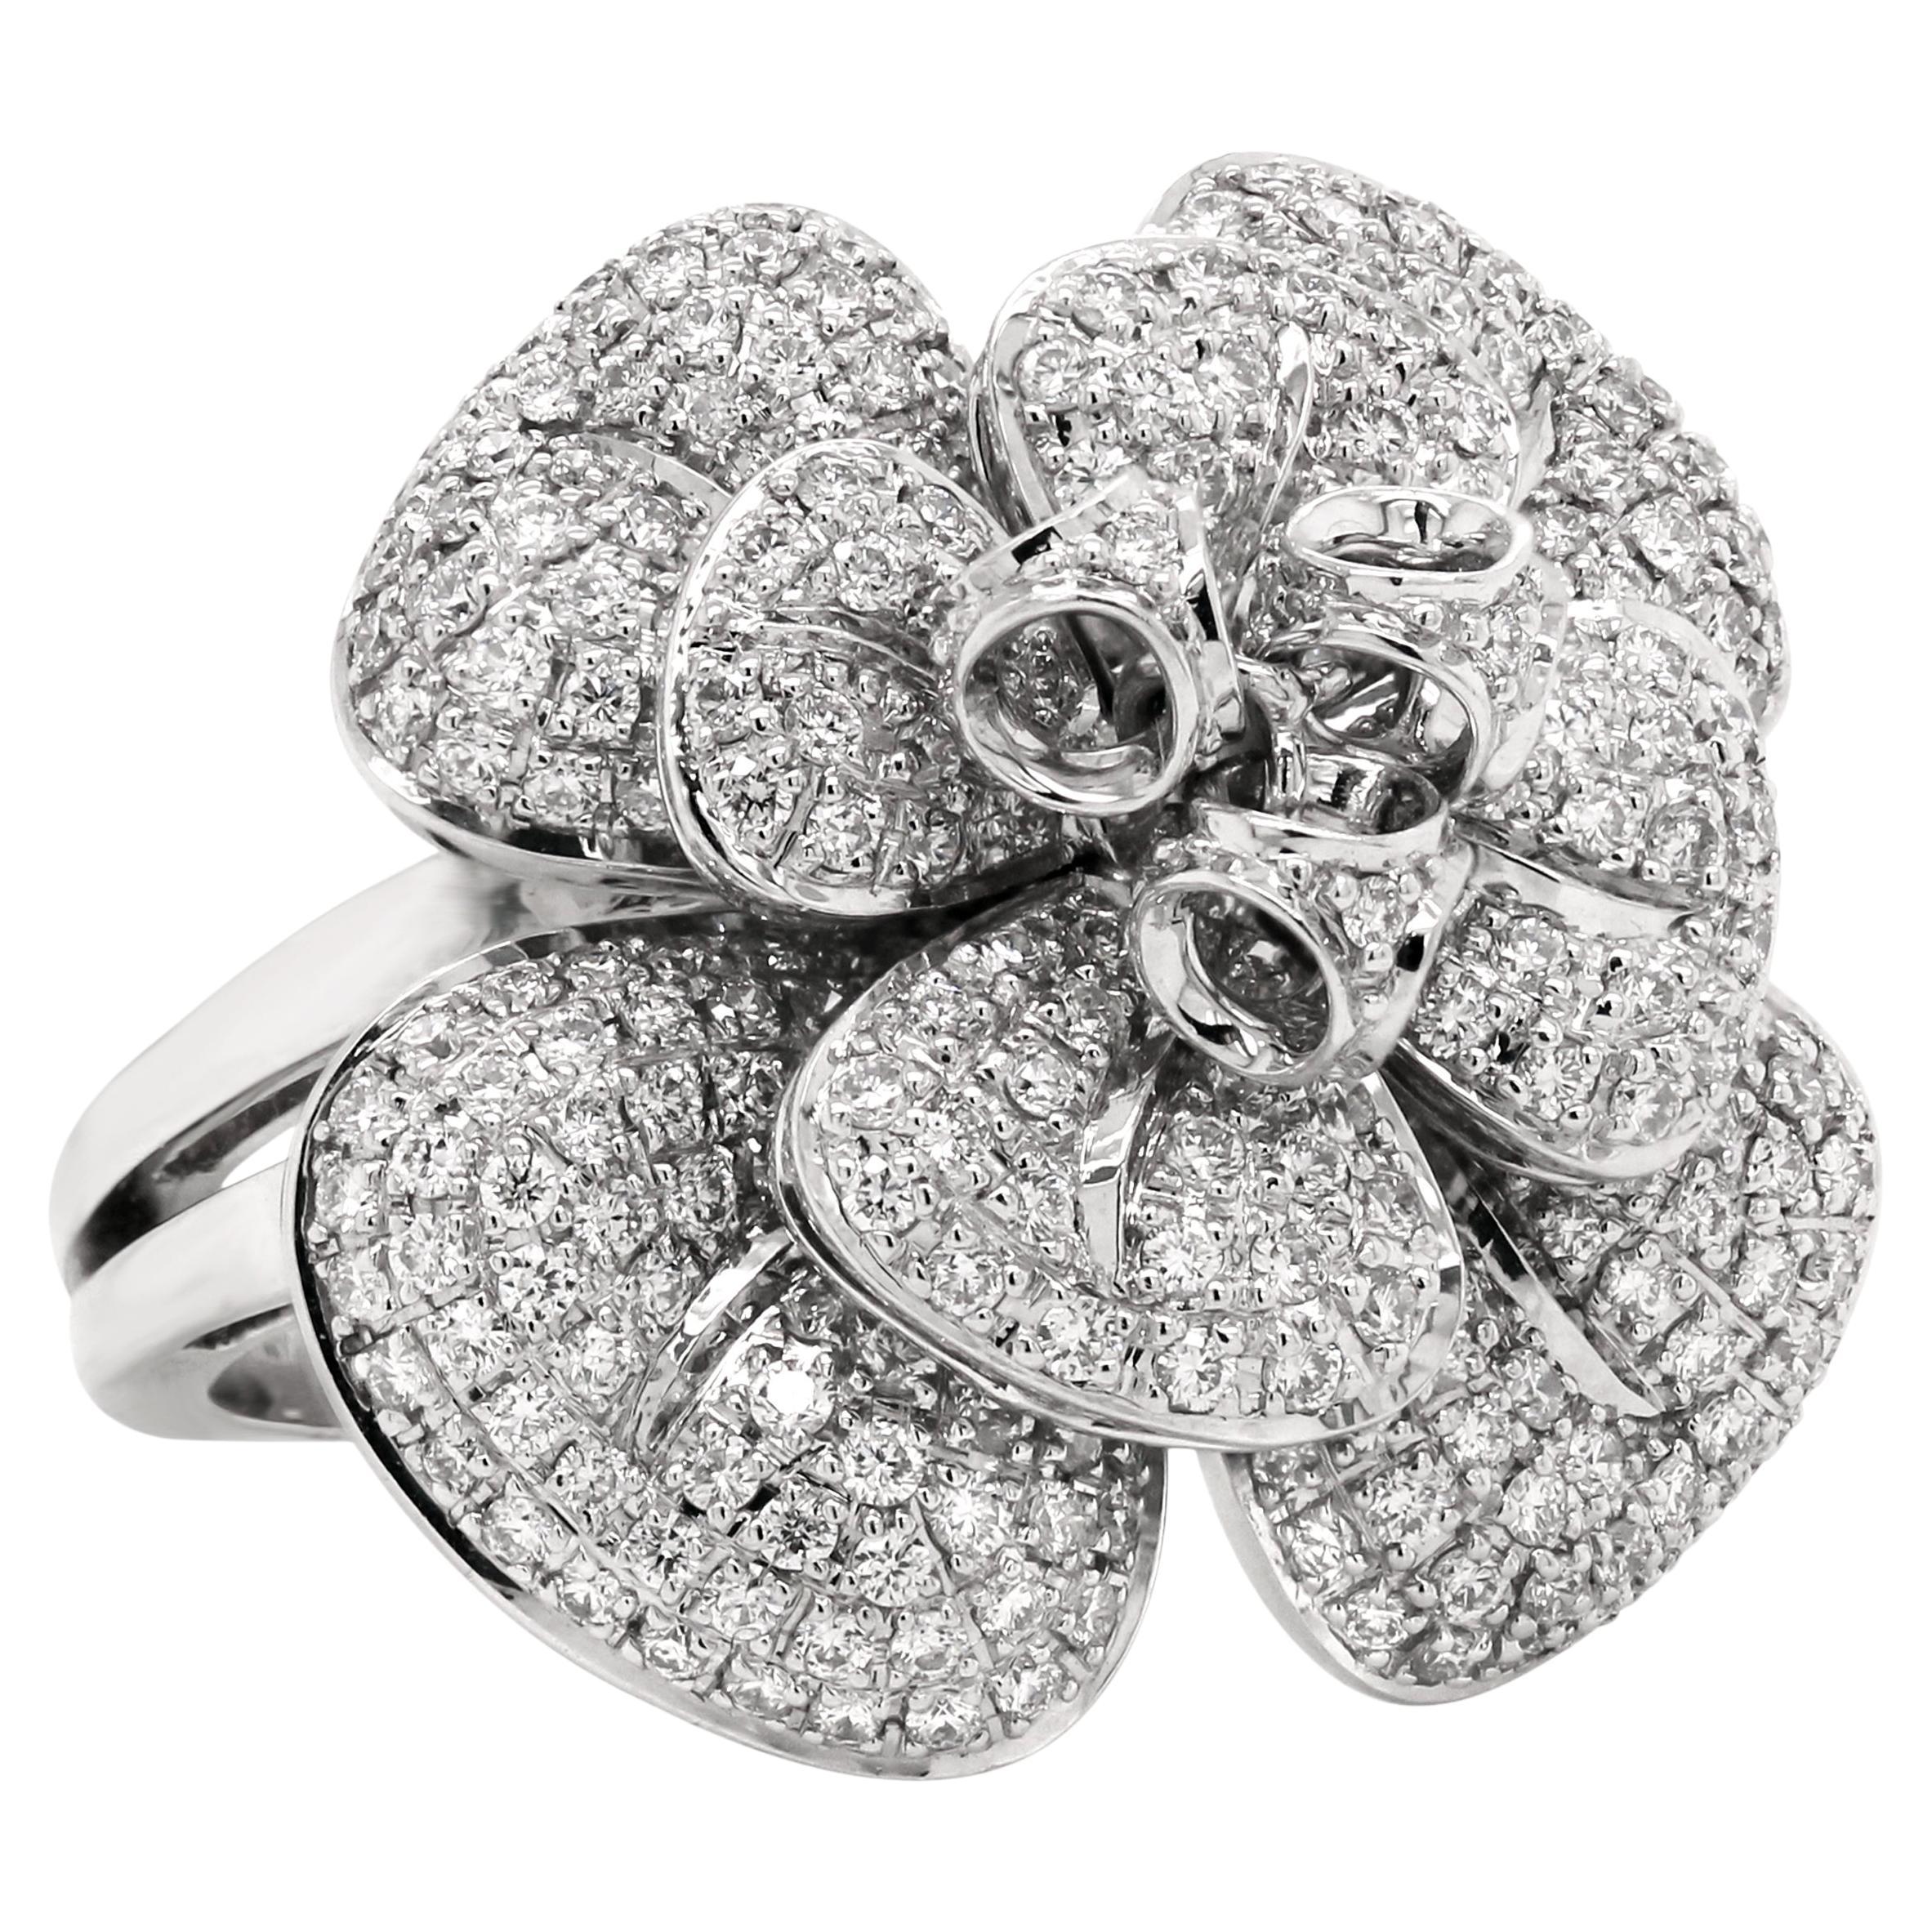 18 Karat White Gold 3 Carat Diamond Three Dimensional Flower Ring